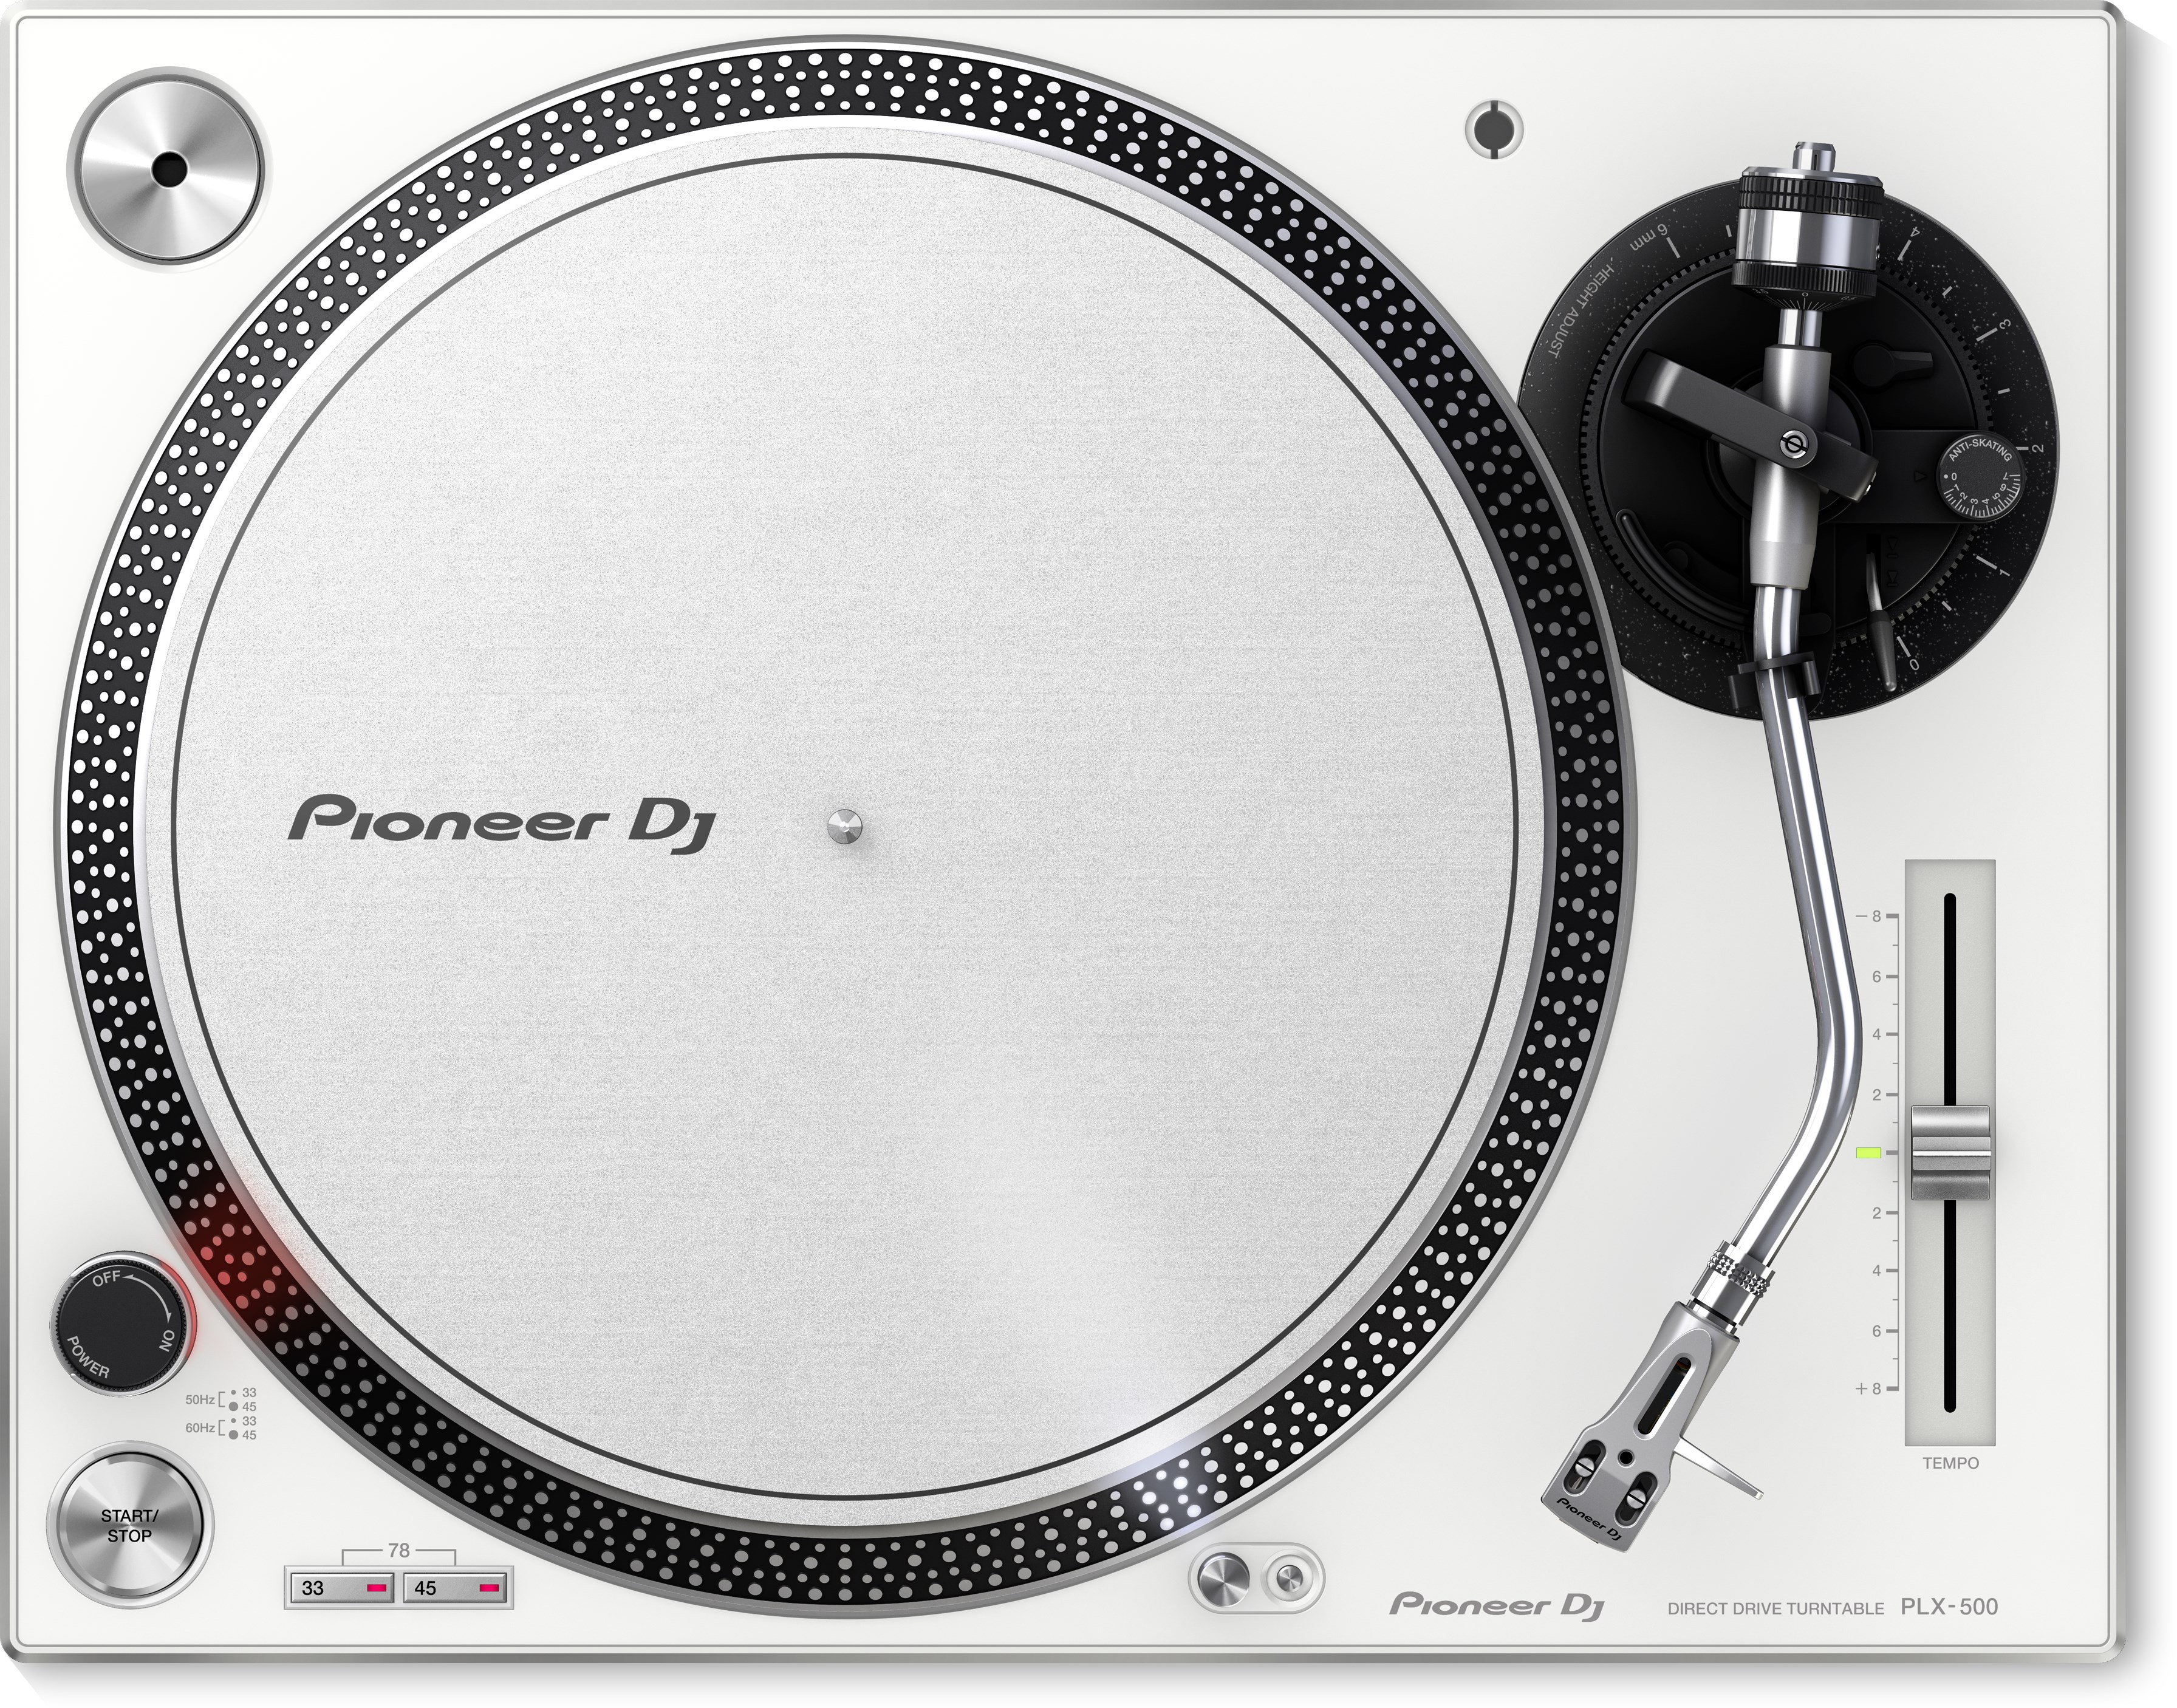 Pioneer Dj Plx-500-w - Turntable - Variation 1